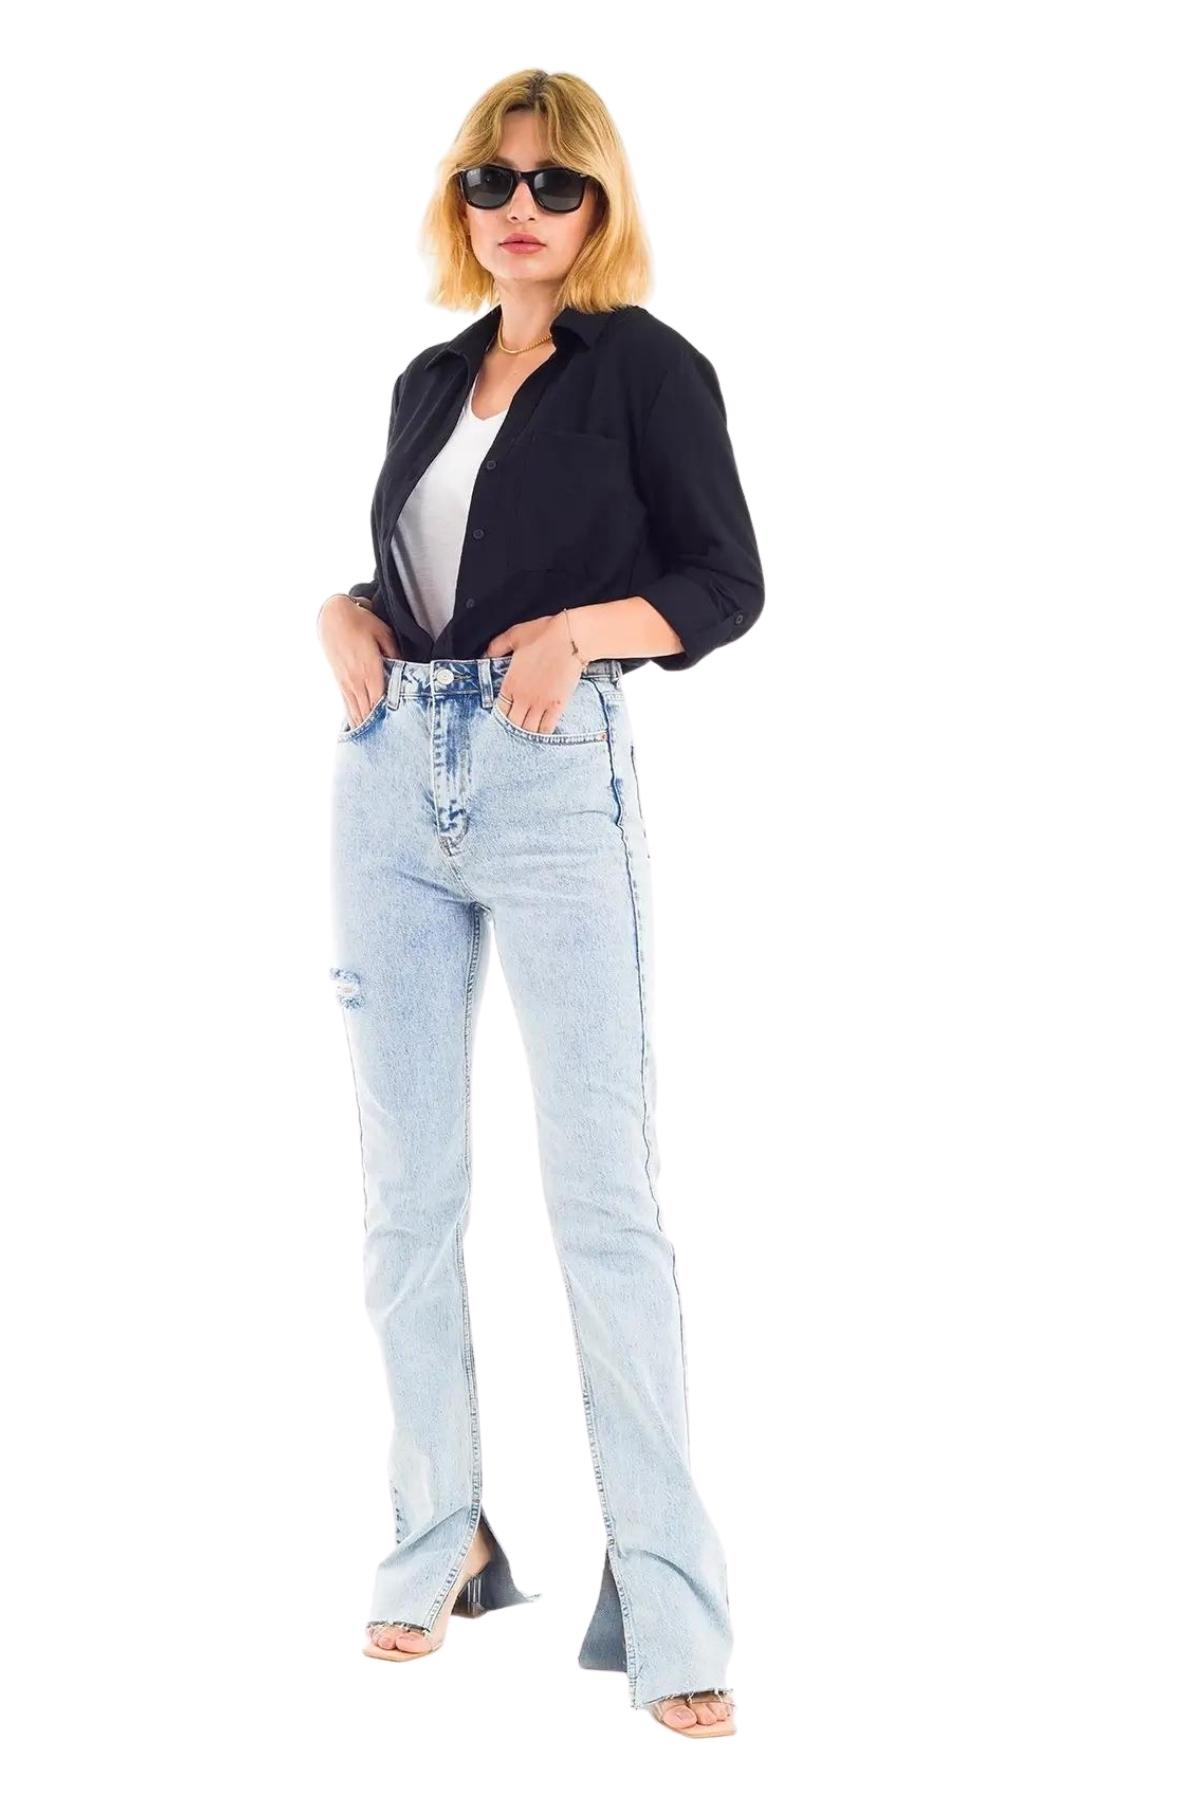 ZDN 9236 Yırtmaç Paçalı Düz Model Kadın Kot Pantolon